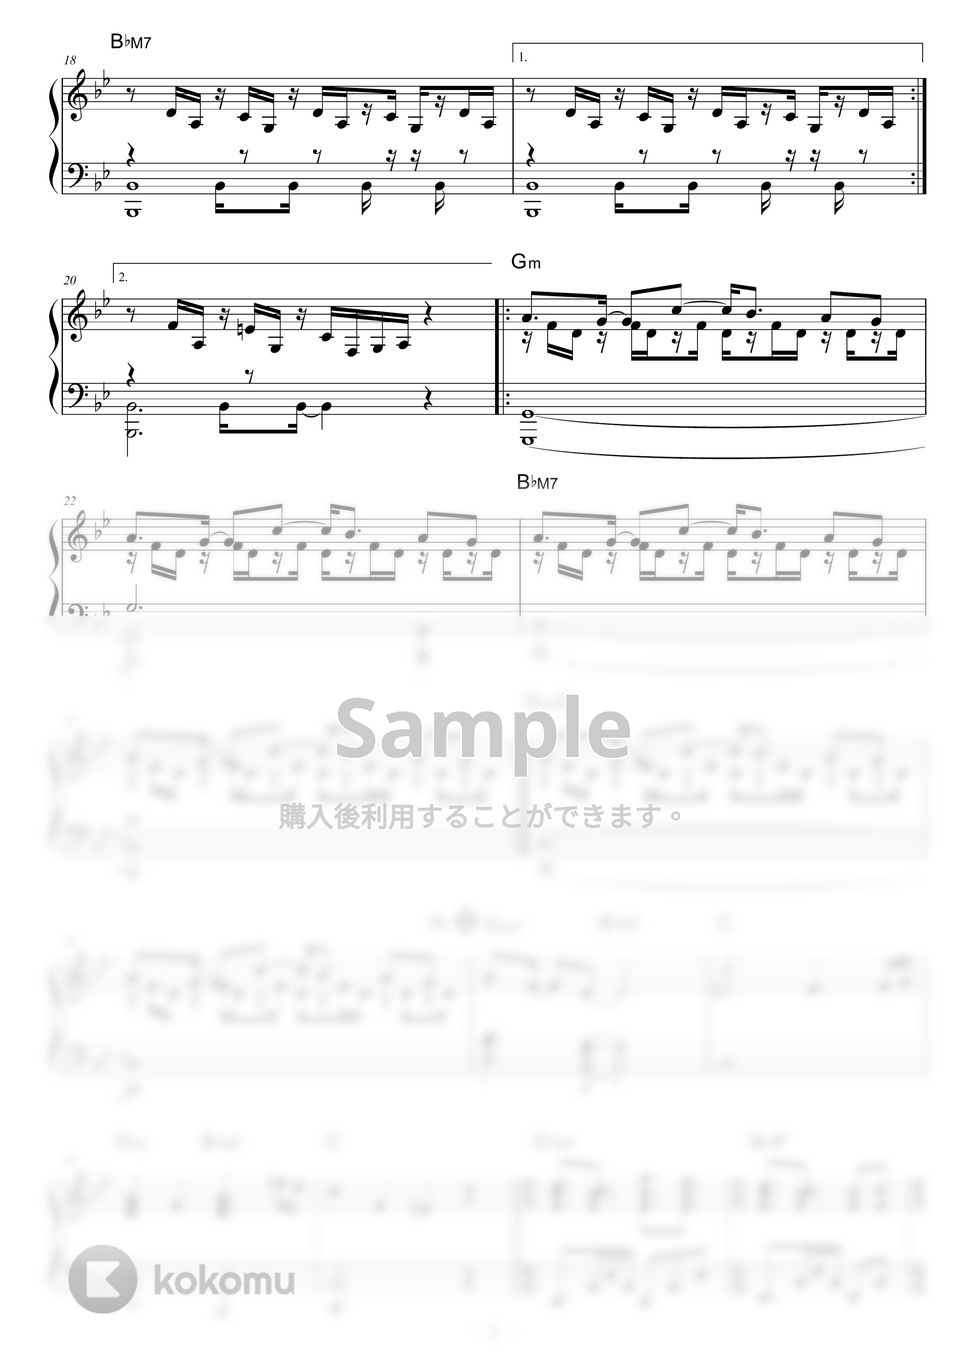 Schroeder-Headz - Hype by piano*score